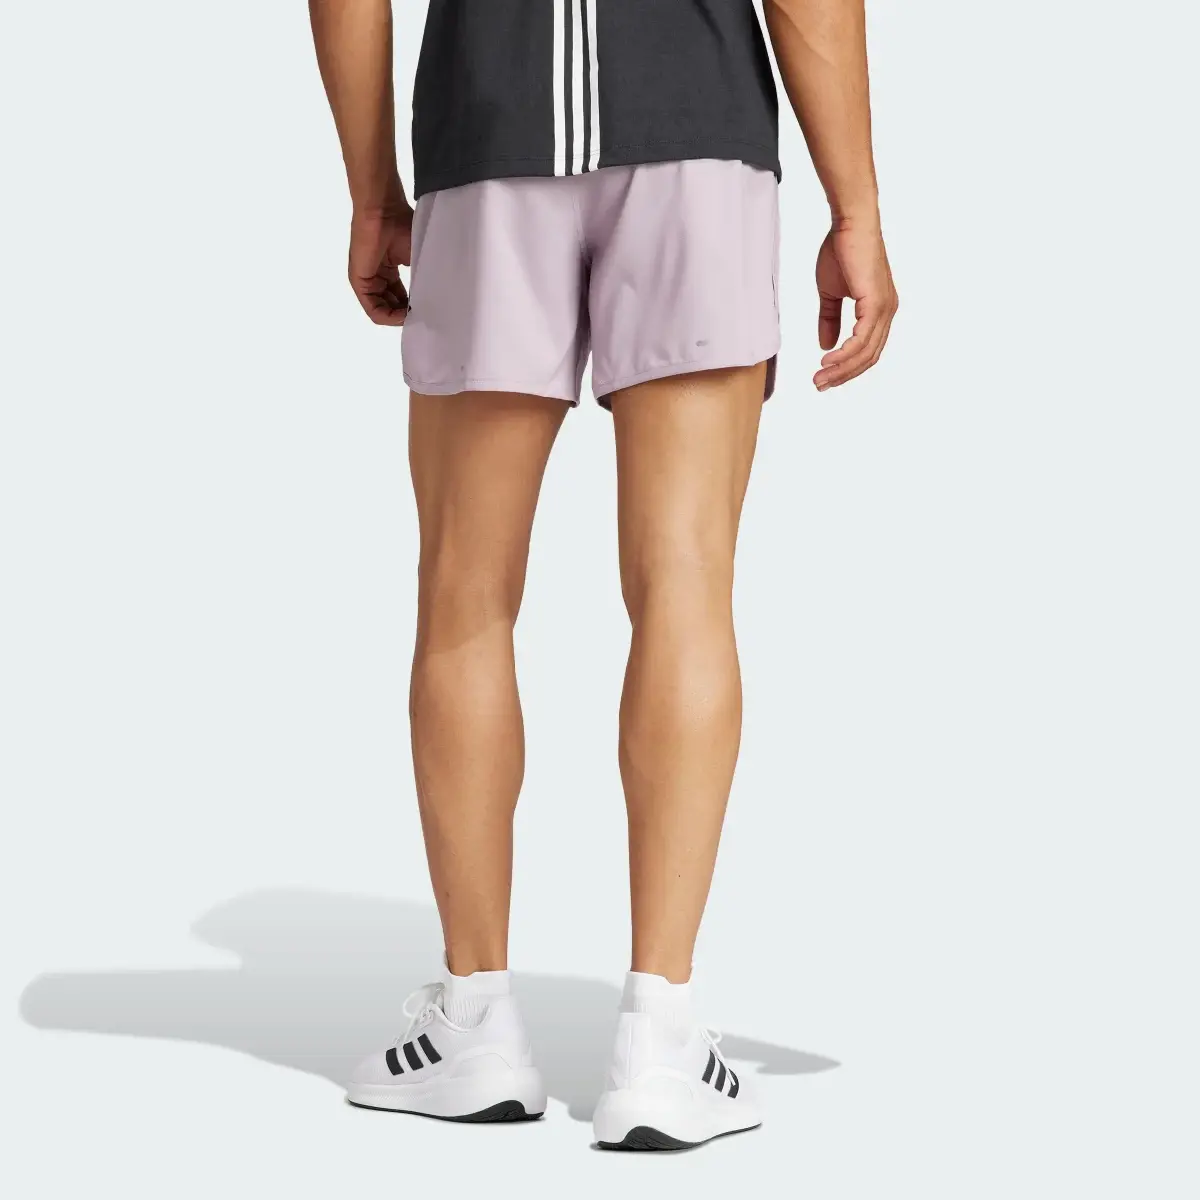 Adidas Own the Run 3-Stripes Shorts. 2